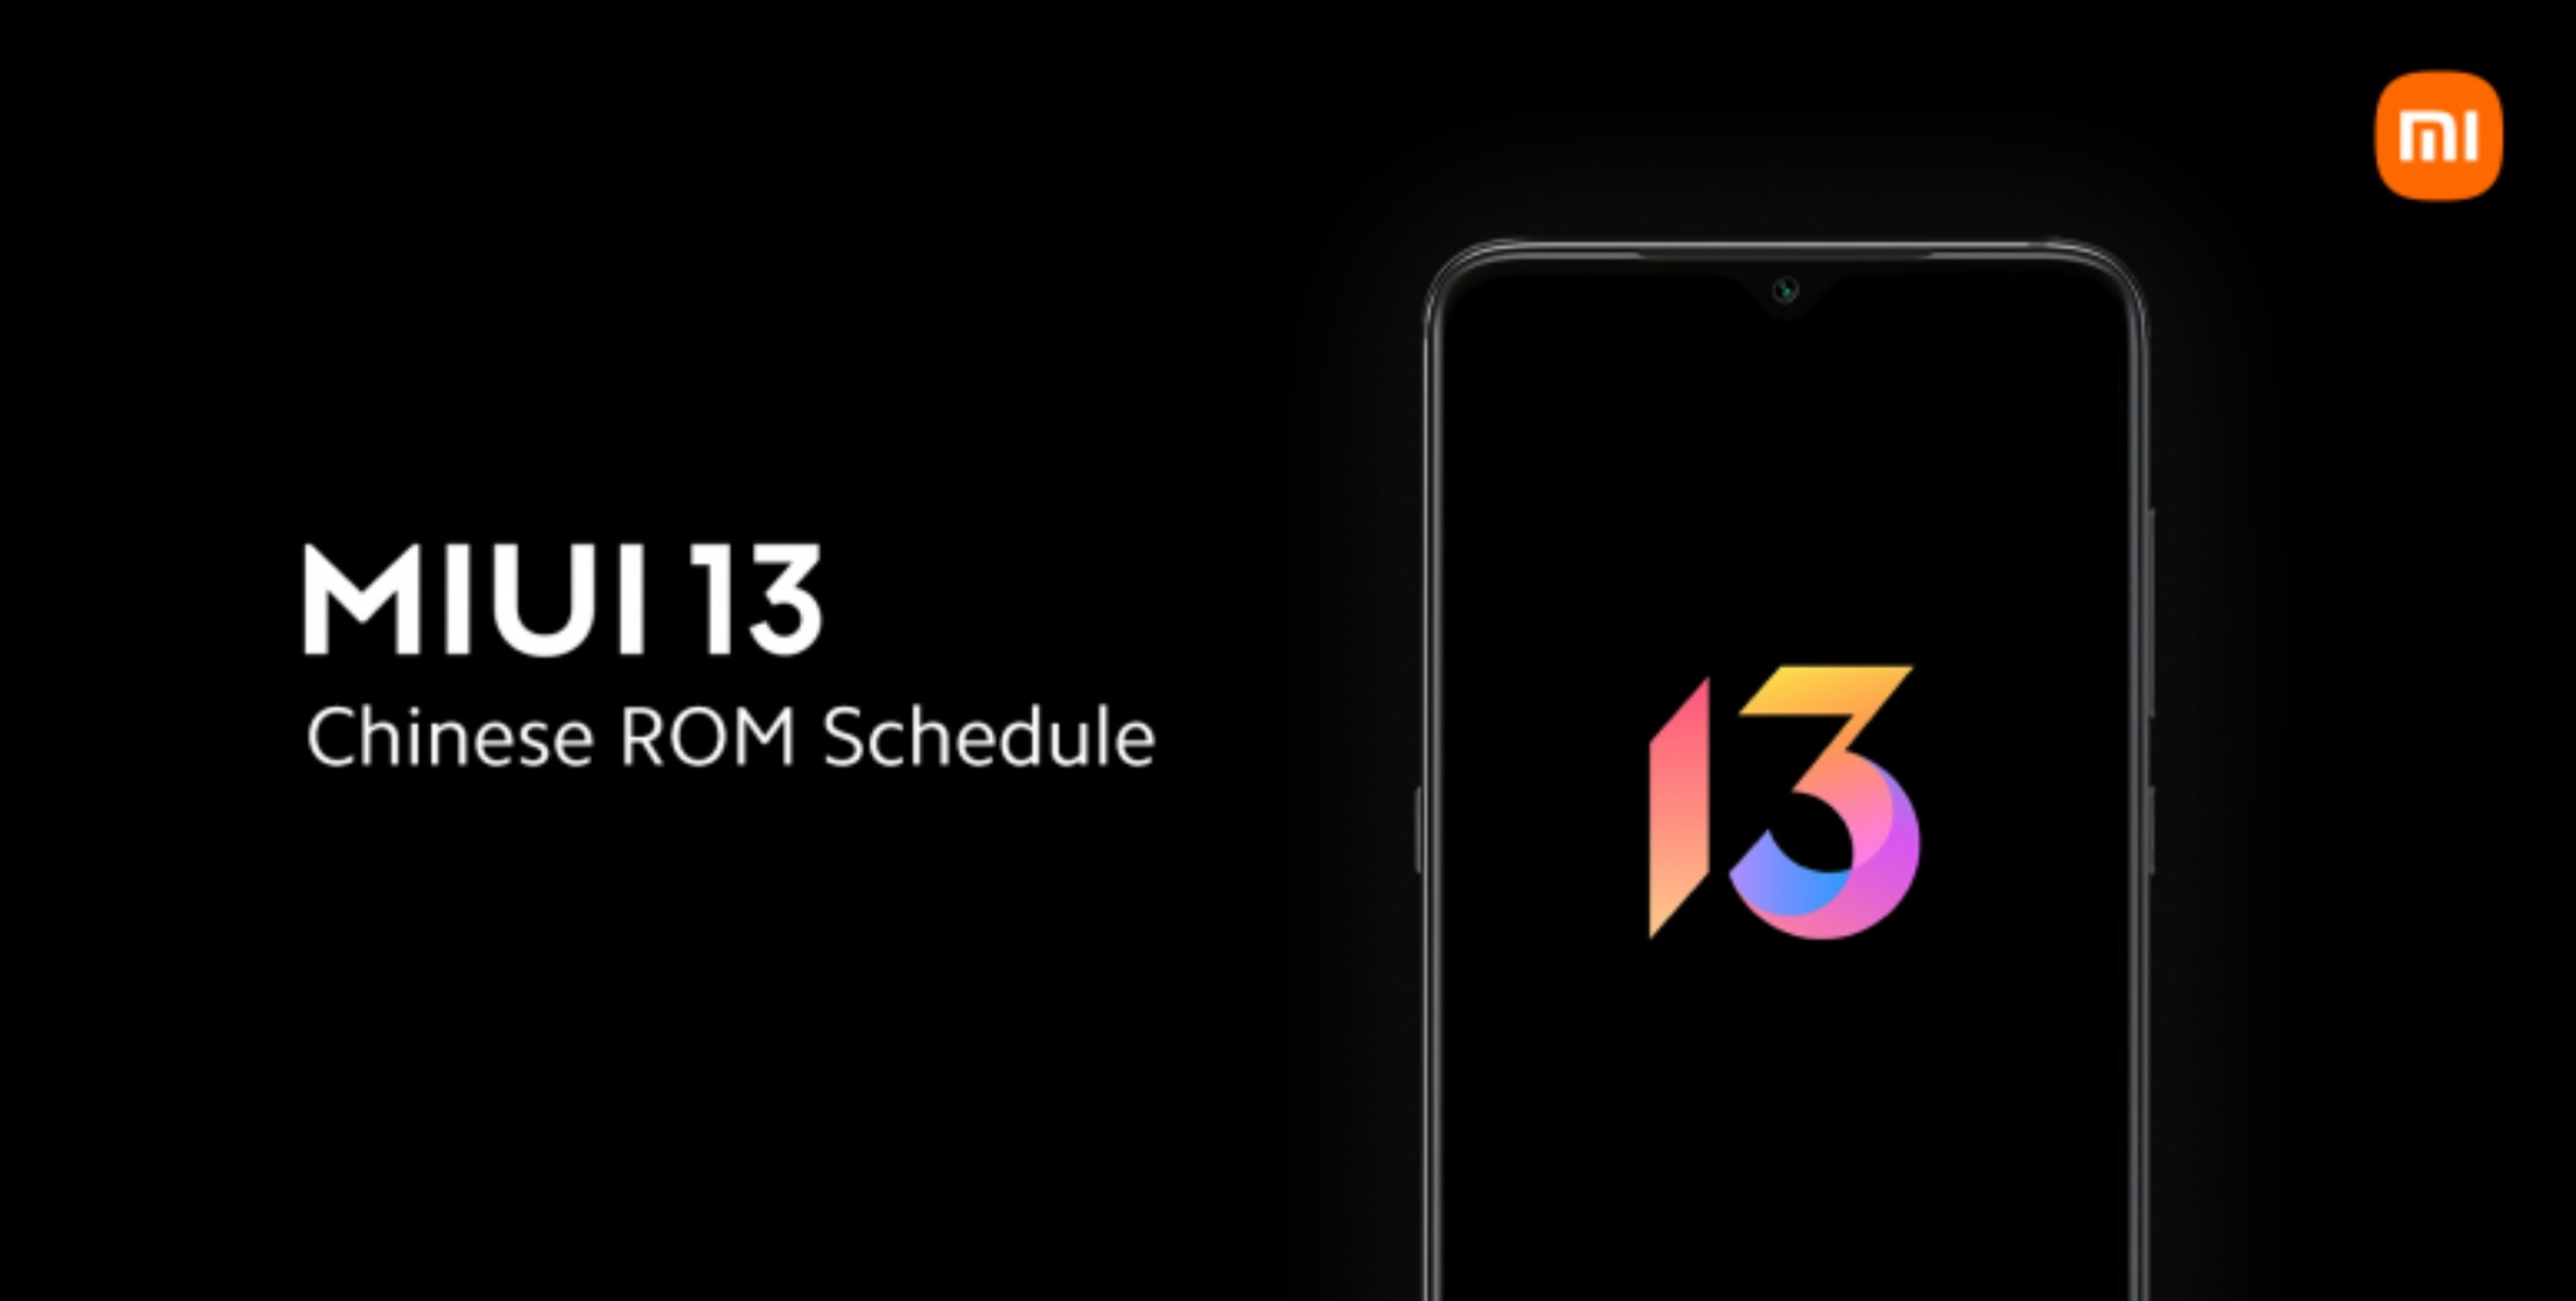 Si tienes un móvil Xiaomi esto te interesa: desveladas las fechas de actualización a MIUI 13